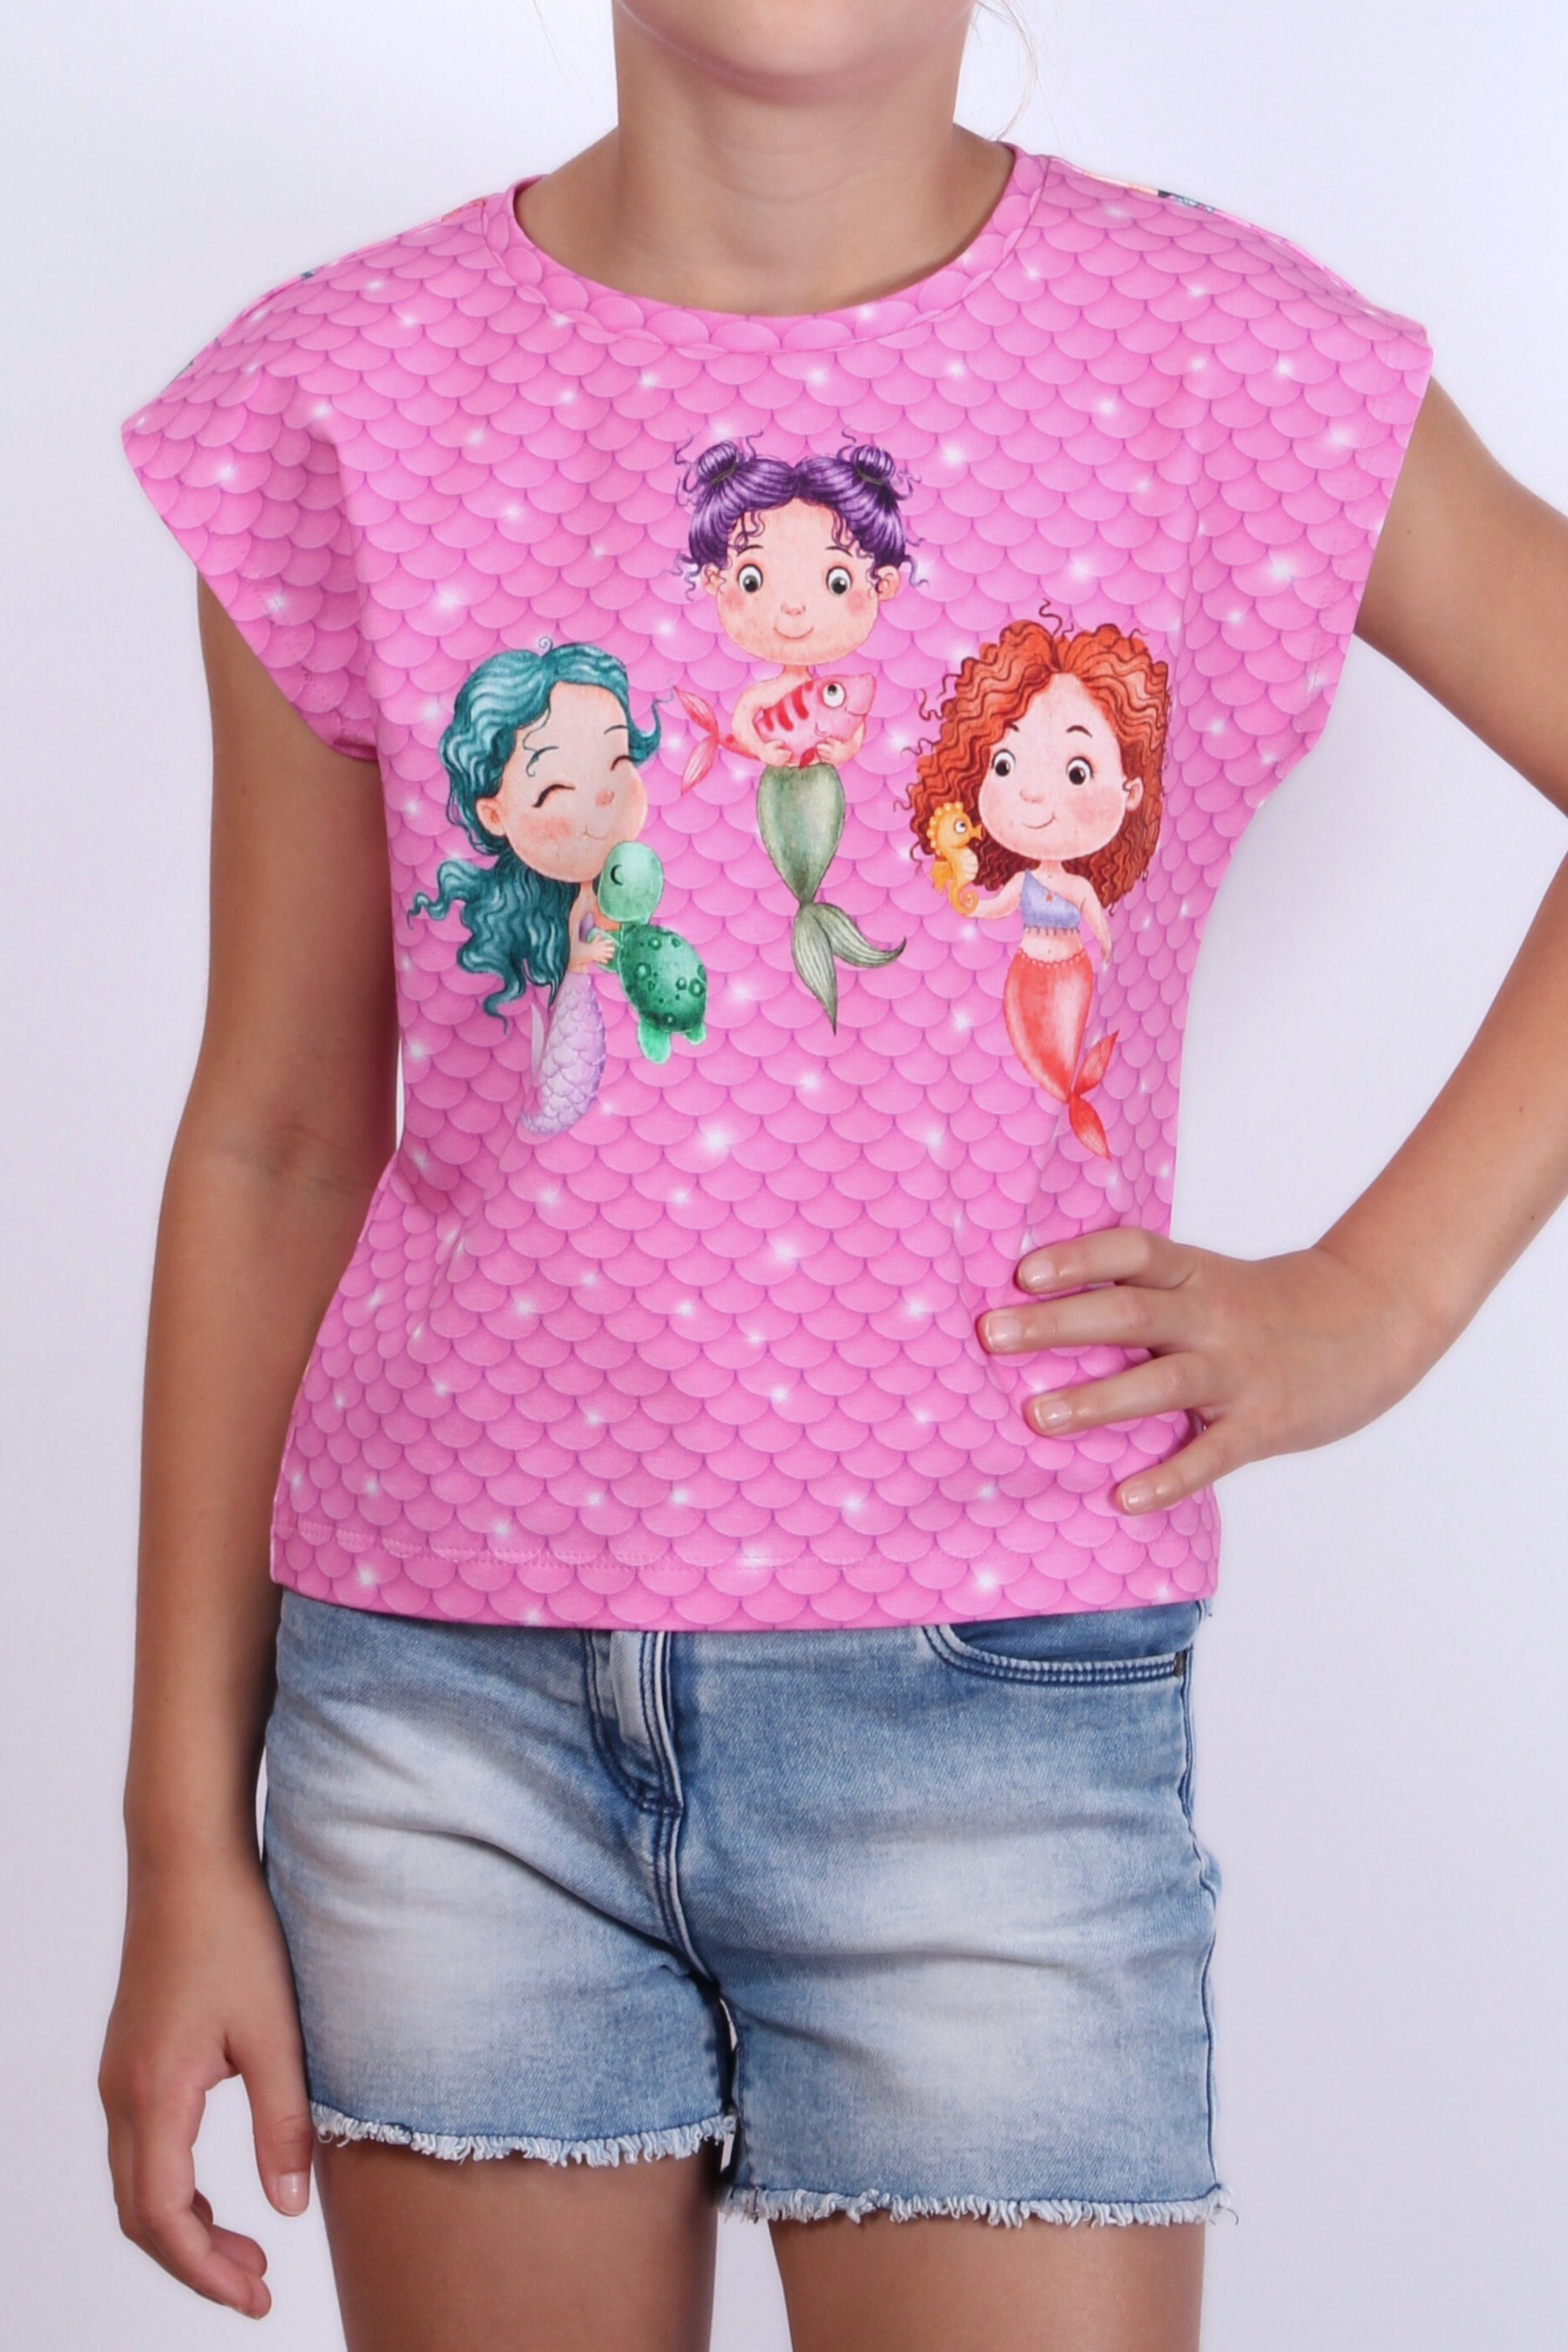 coolismo T-Shirt Print-Shirt Baumwolle, Motiv für Mädchen Meerjungfrau europäische Produktion